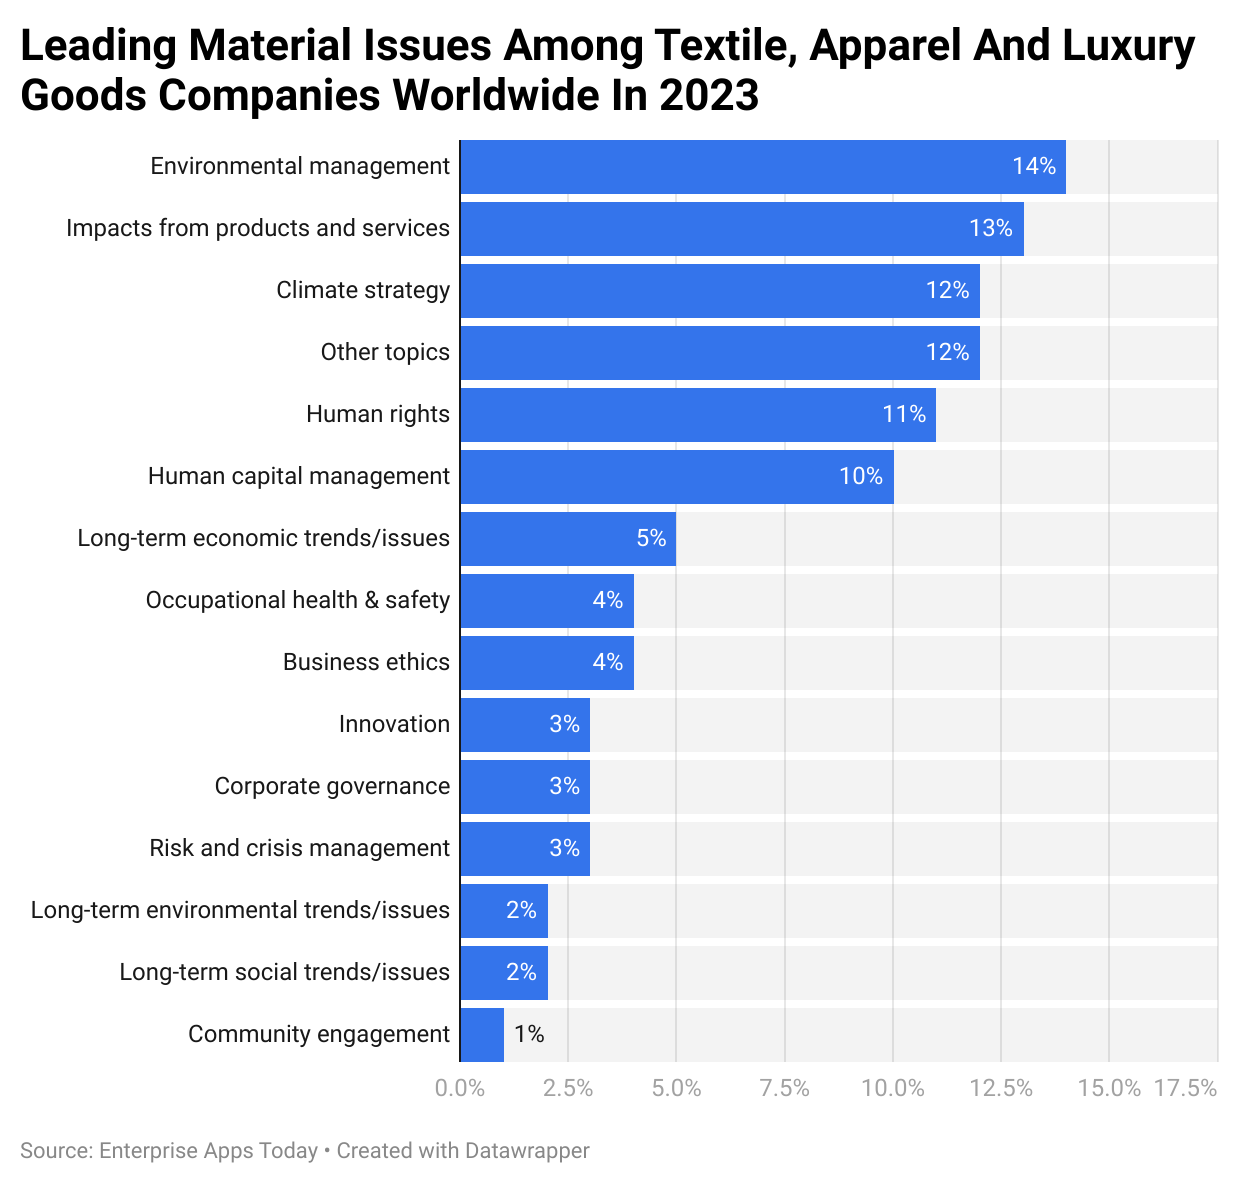 Toonaangevende materiaalproblemen onder textiel-, kleding- en luxegoederenbedrijven wereldwijd in 2023